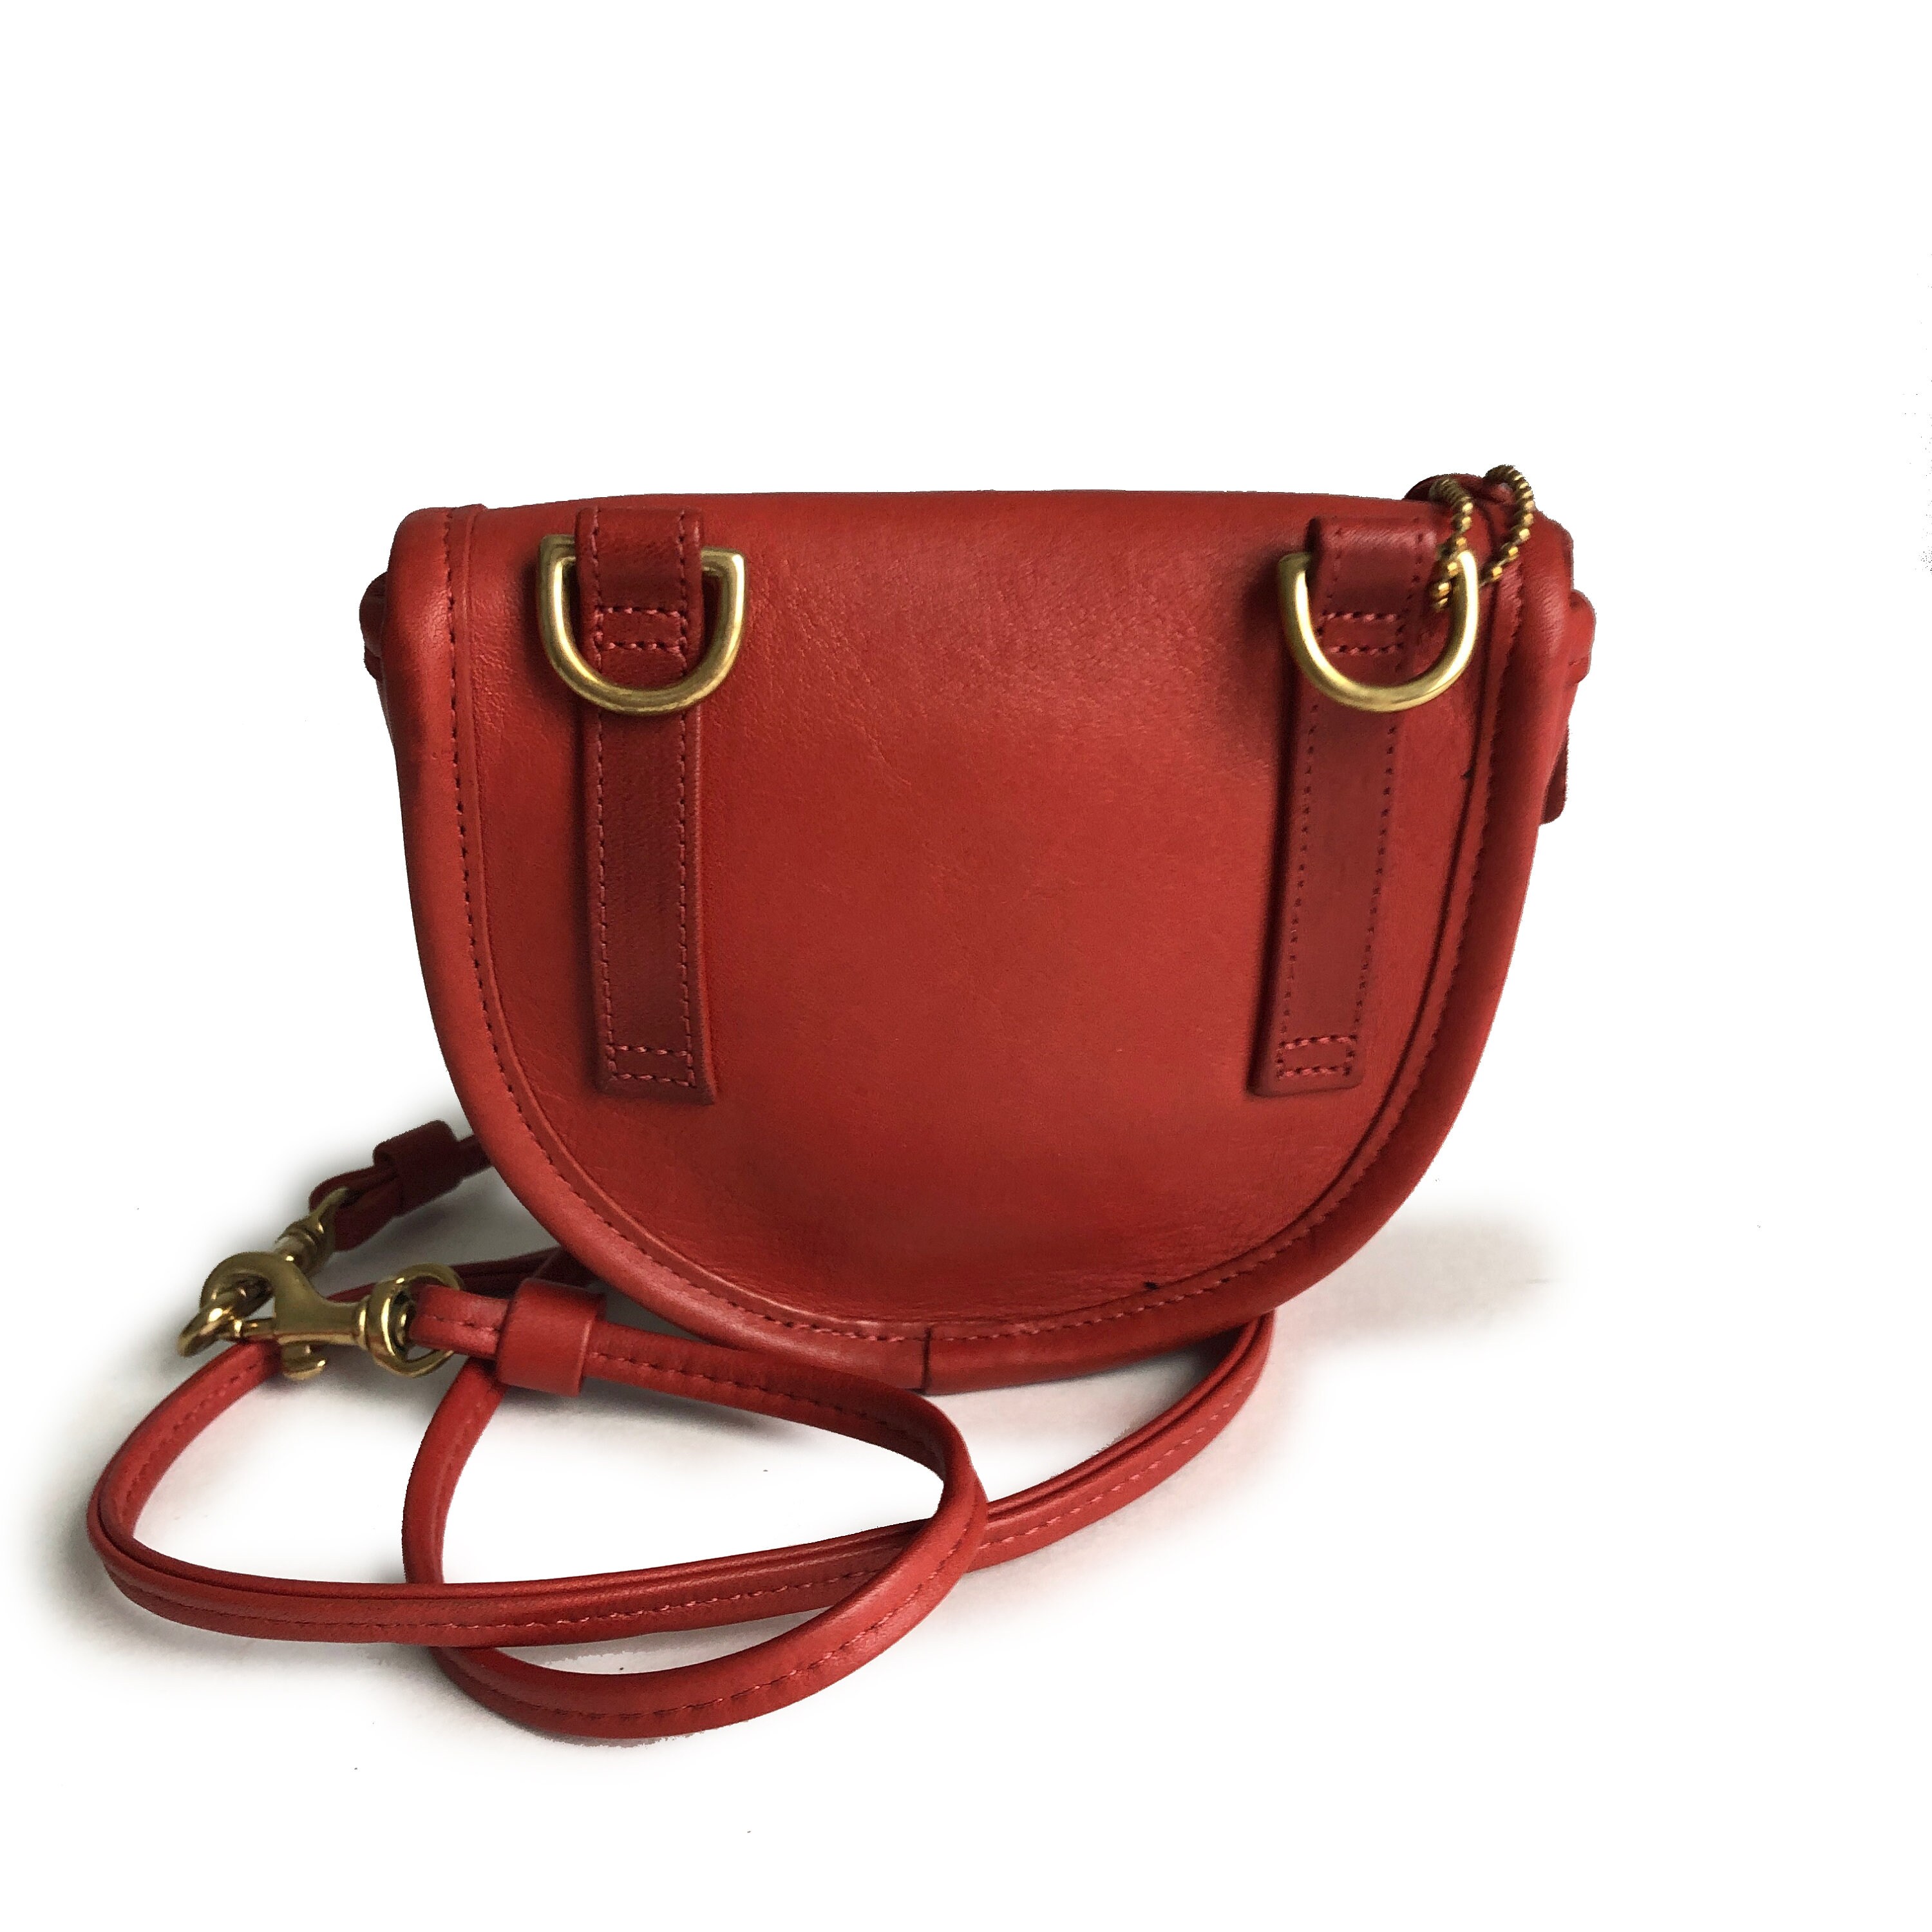 Hermès vintage clutch belt red leather 1993